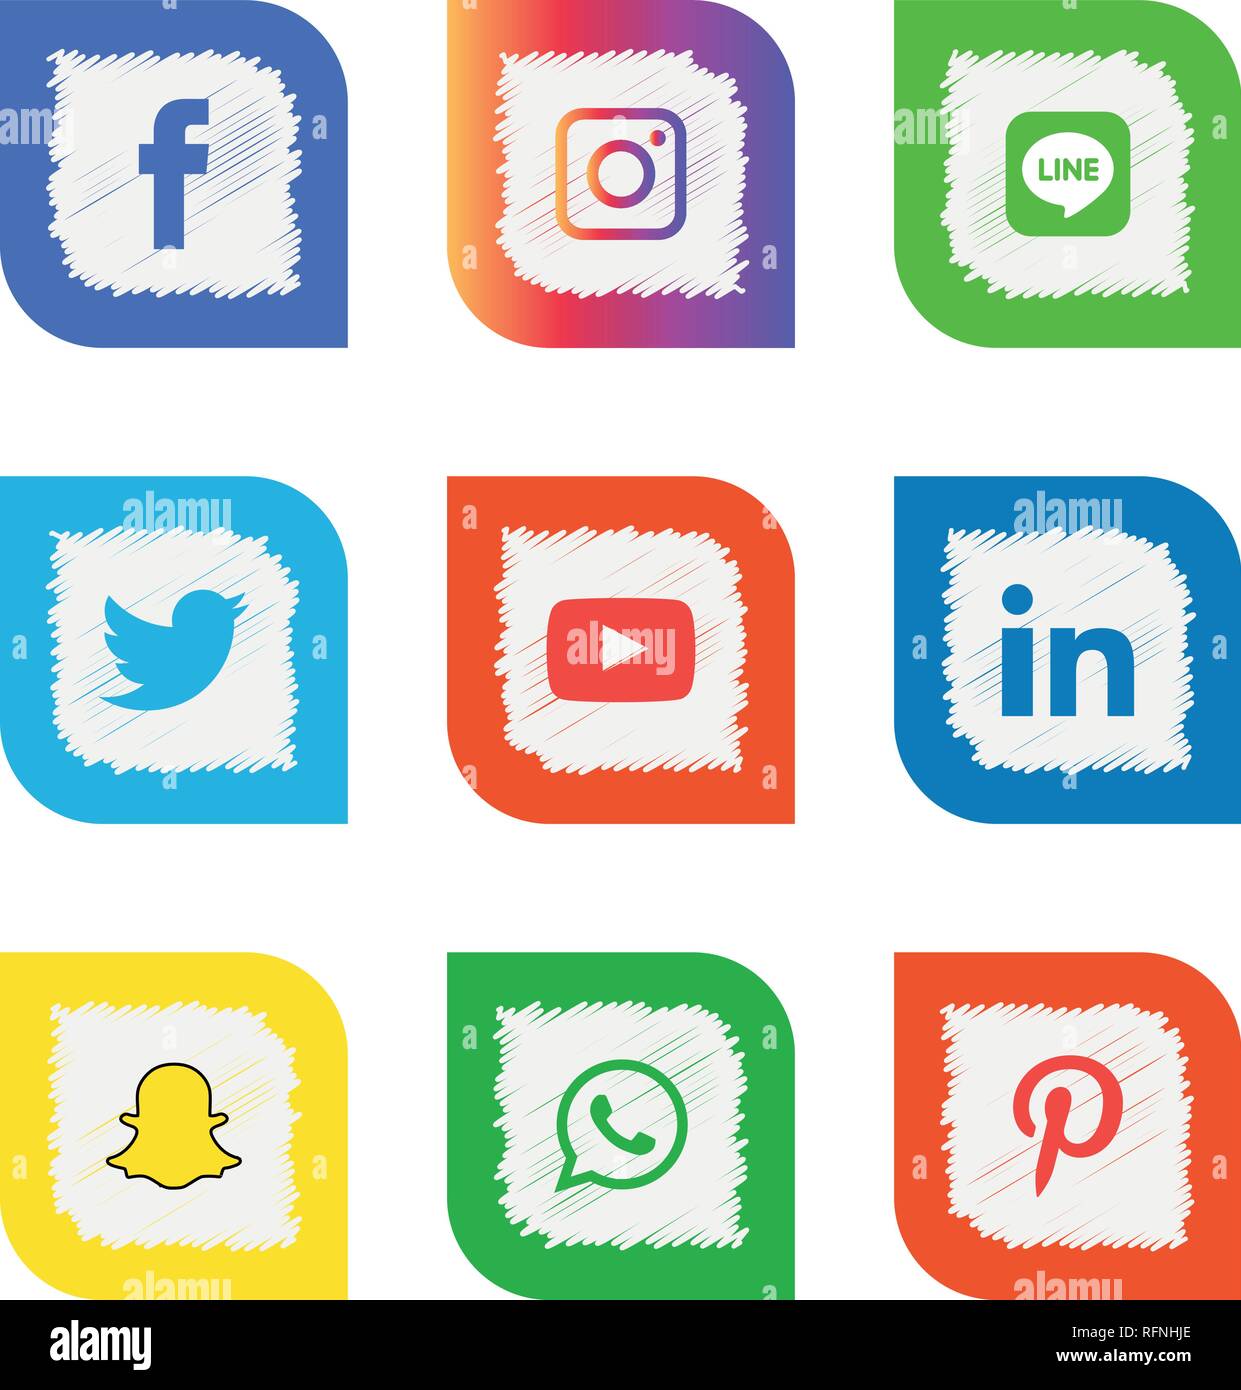 Social Media Icons Set Logo Vector Illustrator Facebook Instagram Twitter Whatsapp Google Plus Google Pinterest Linkedin Messenger Stock Vector Image Art Alamy